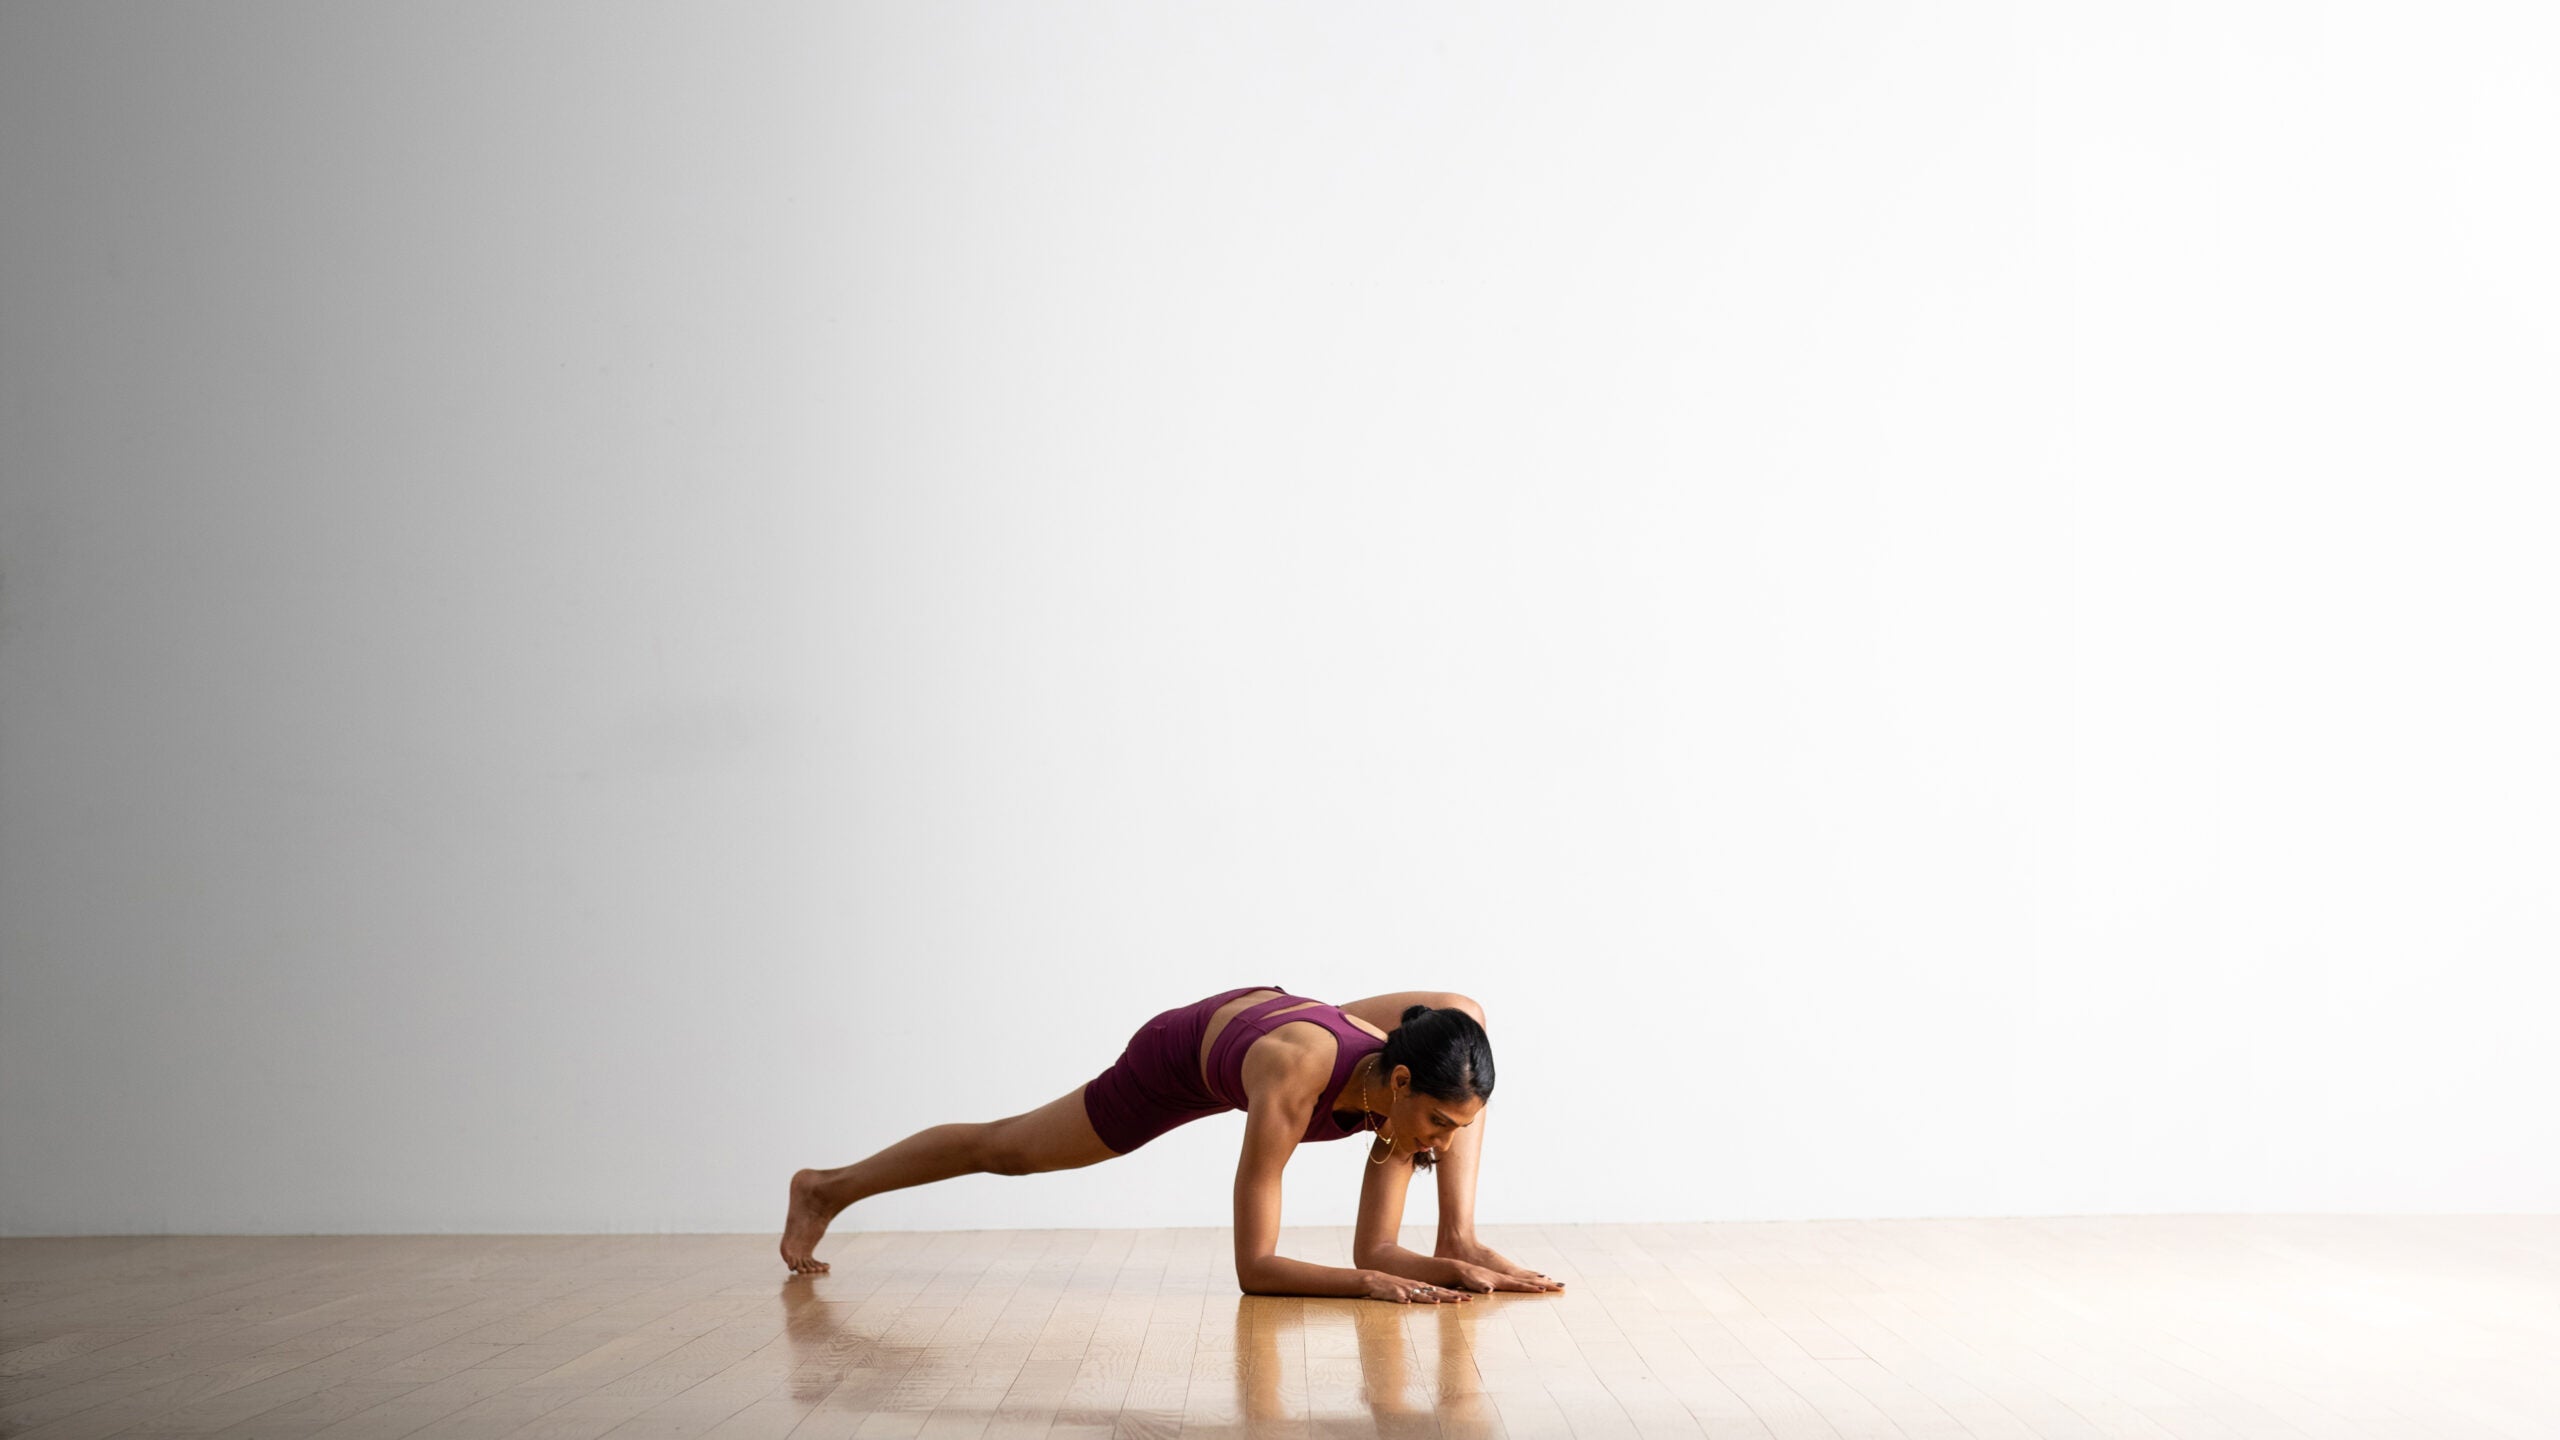 Yogi Female in Yoga Asana Two-Legged Koundinyaâ€™s Pose Stock Image - Image  of lifestyle, balance: 49834203